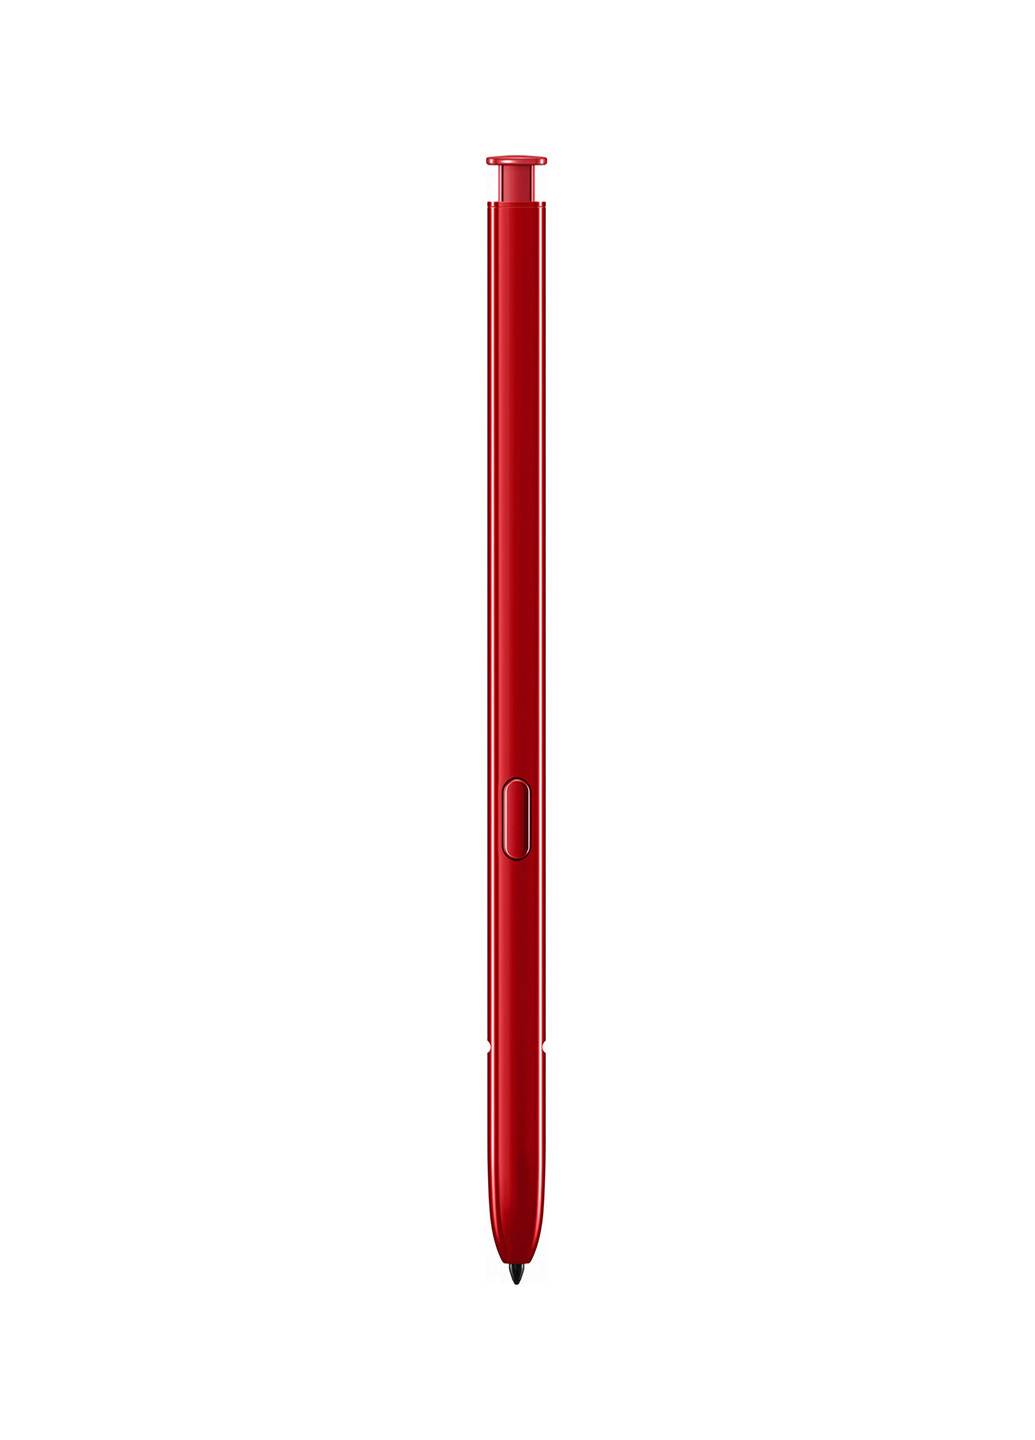 Смартфон Galaxy Note 10 2019 8 / 256Gb Aura Red (SM-N970FZRDSEK) Samsung galaxy note 10 2019 8/256gb aura red (sm-n970fzrdsek) (154686404)